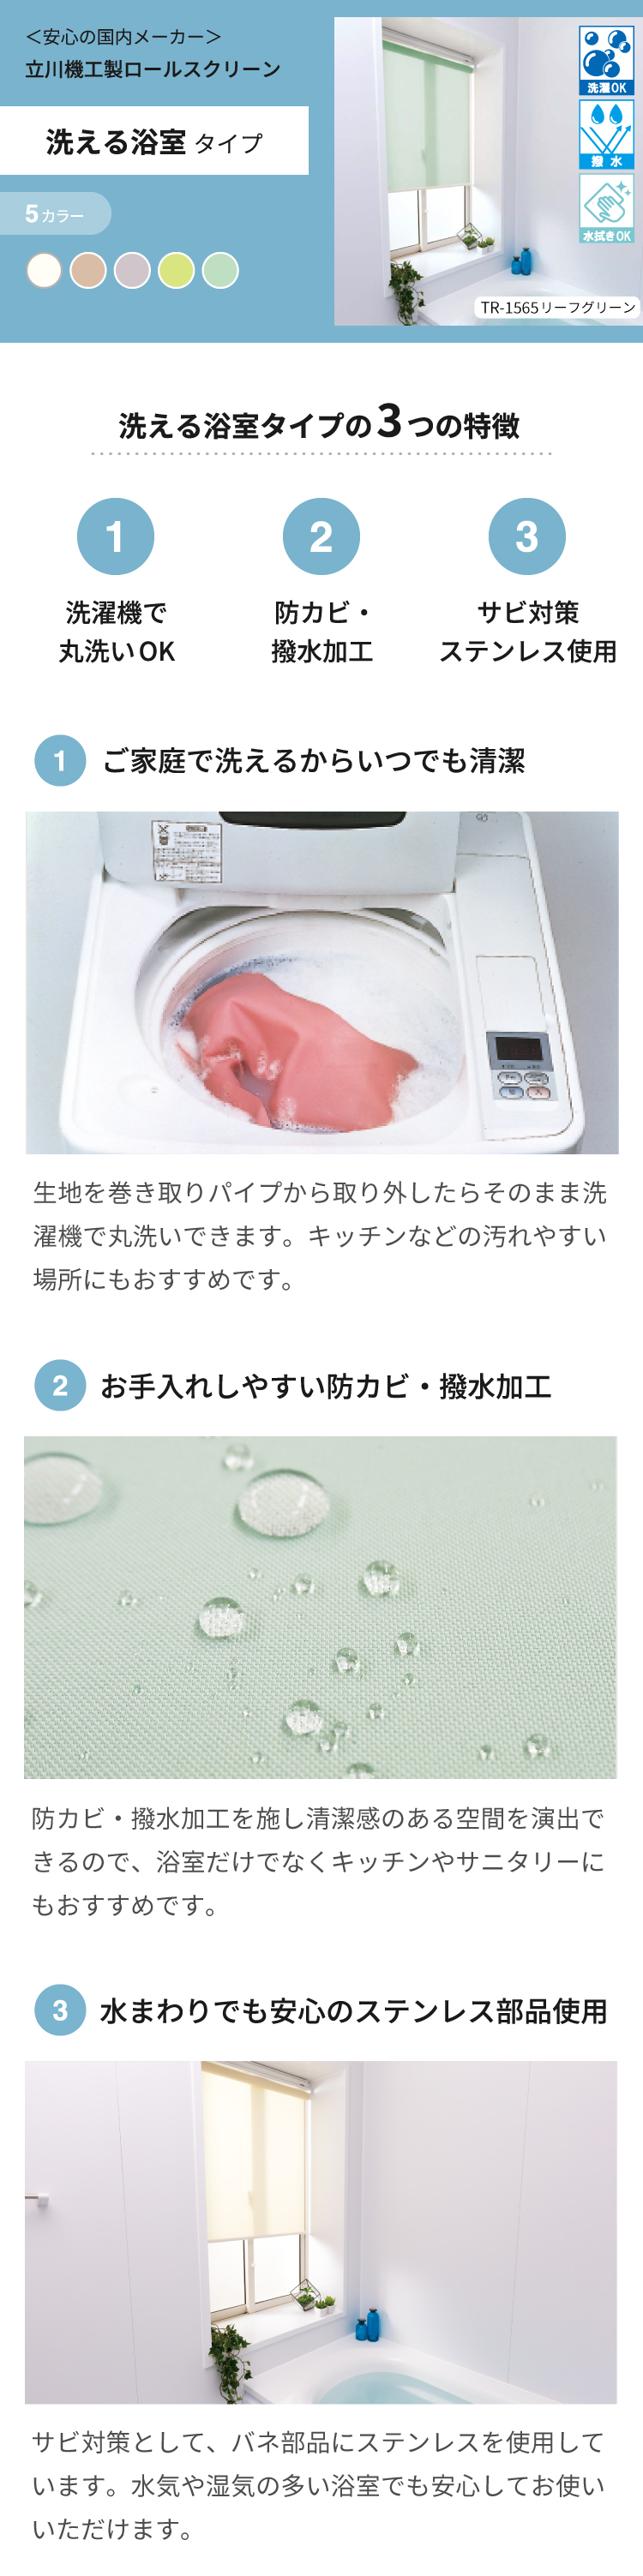 立川機工ロールスクリーン 洗える浴室タイプ / Re:HOME